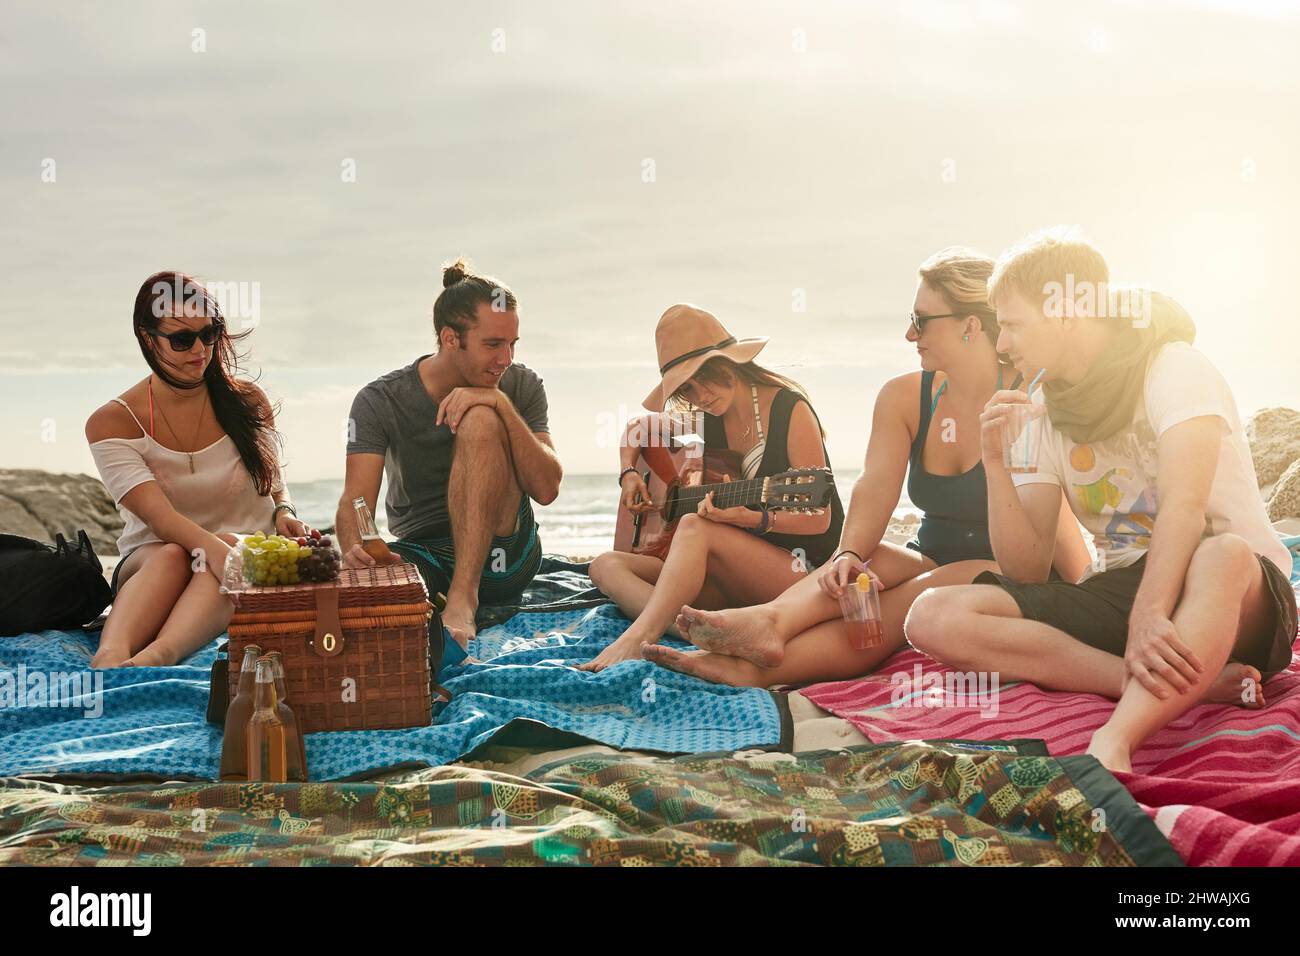 Unsere besten Erinnerungen werden am Strand gemacht. Aufnahme einer Gruppe glücklicher junger Freunde, die gemeinsam ein Picknick am Strand genießen. Stockfoto